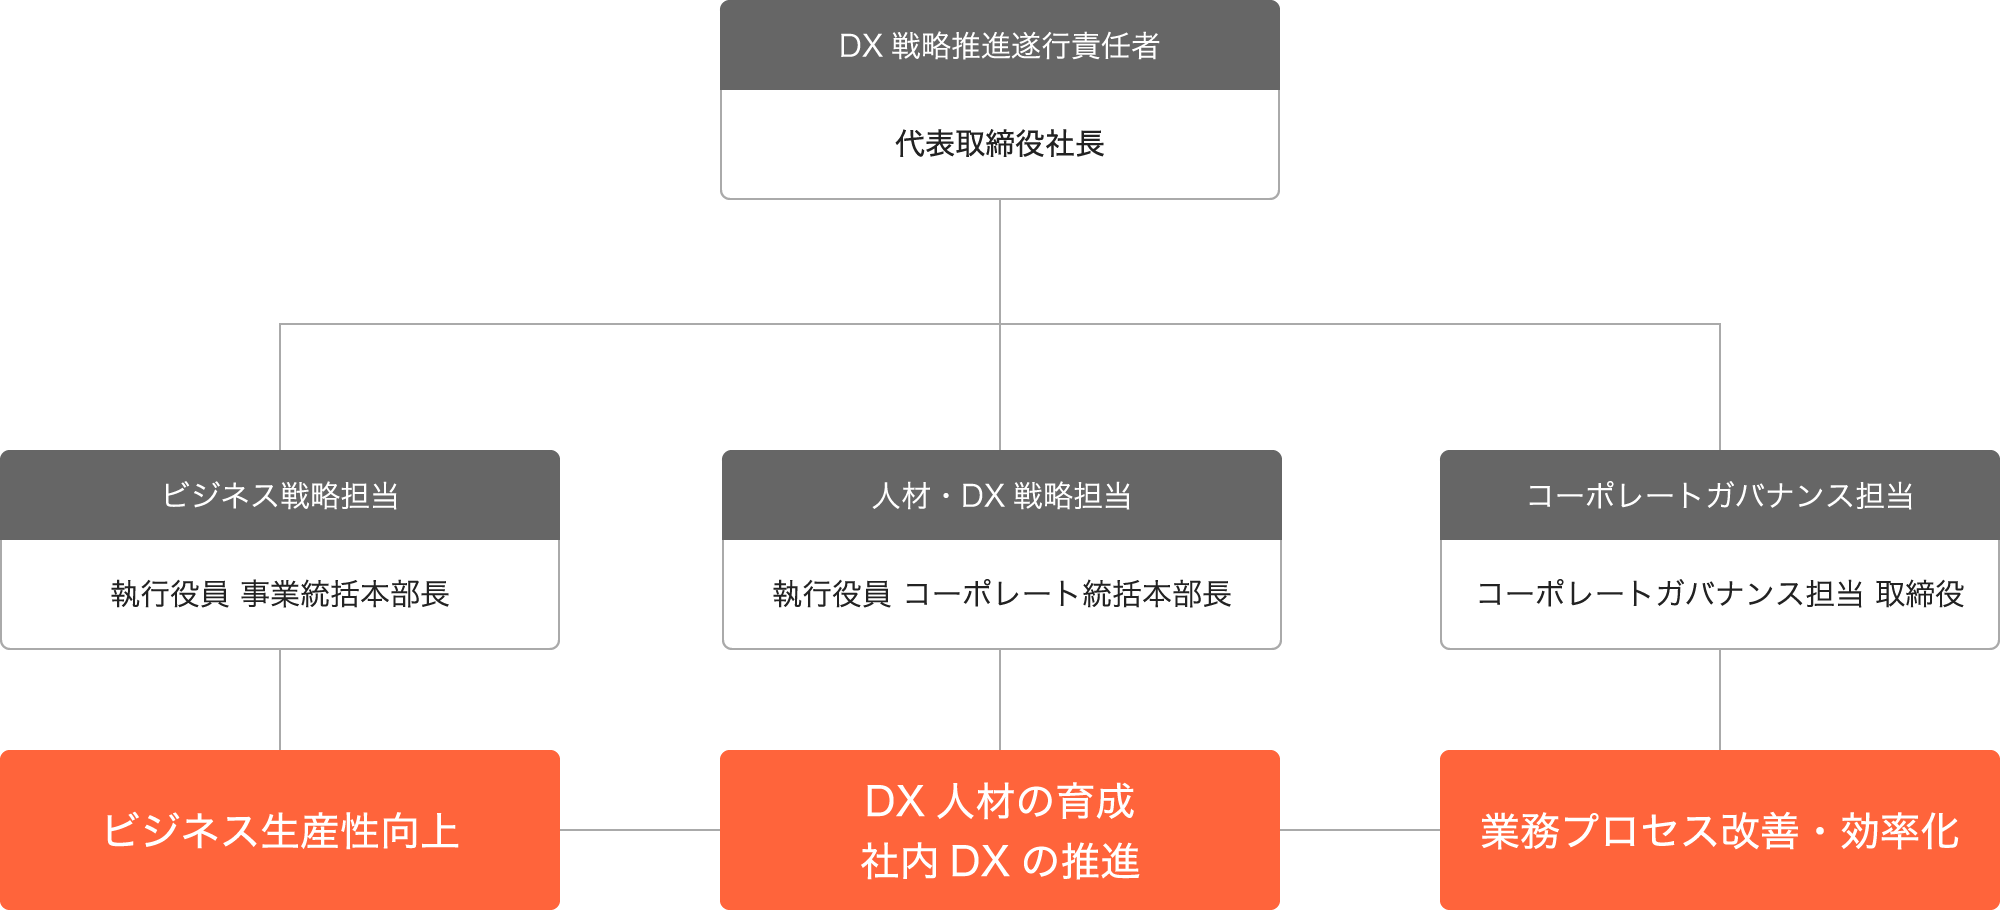 DX推進組織